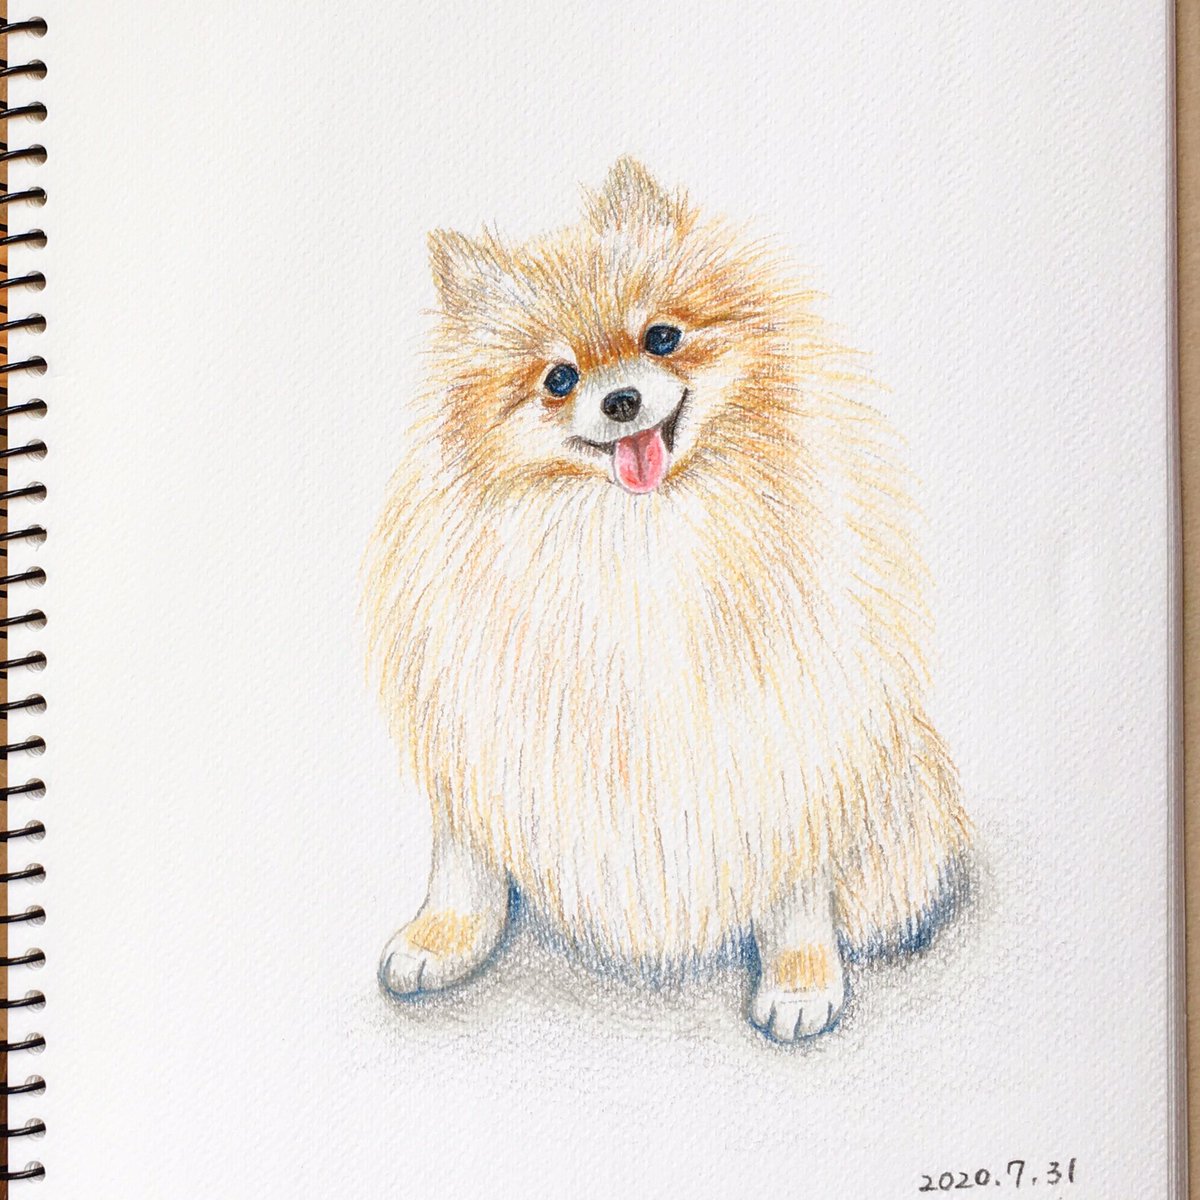 Chippoke ようこ 犬絵 ポメラニアン 色鉛筆画 色鉛筆イラスト イラスト 犬イラスト 犬の絵 犬 ポメ Chippoke犬絵